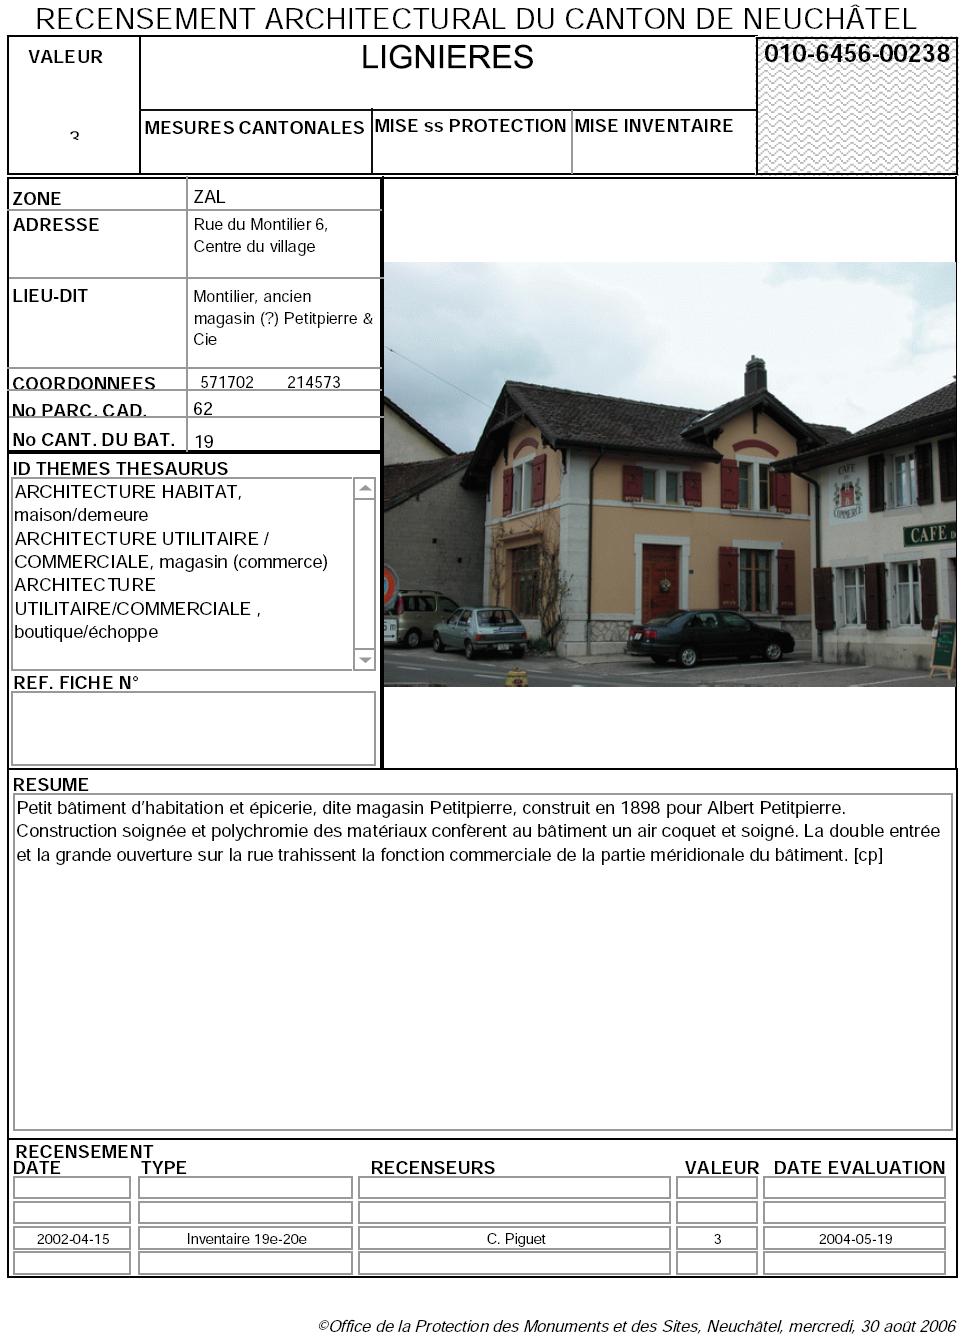 Recensement architectural du canton de Neuchâtel: Fiche 010-6456-00238